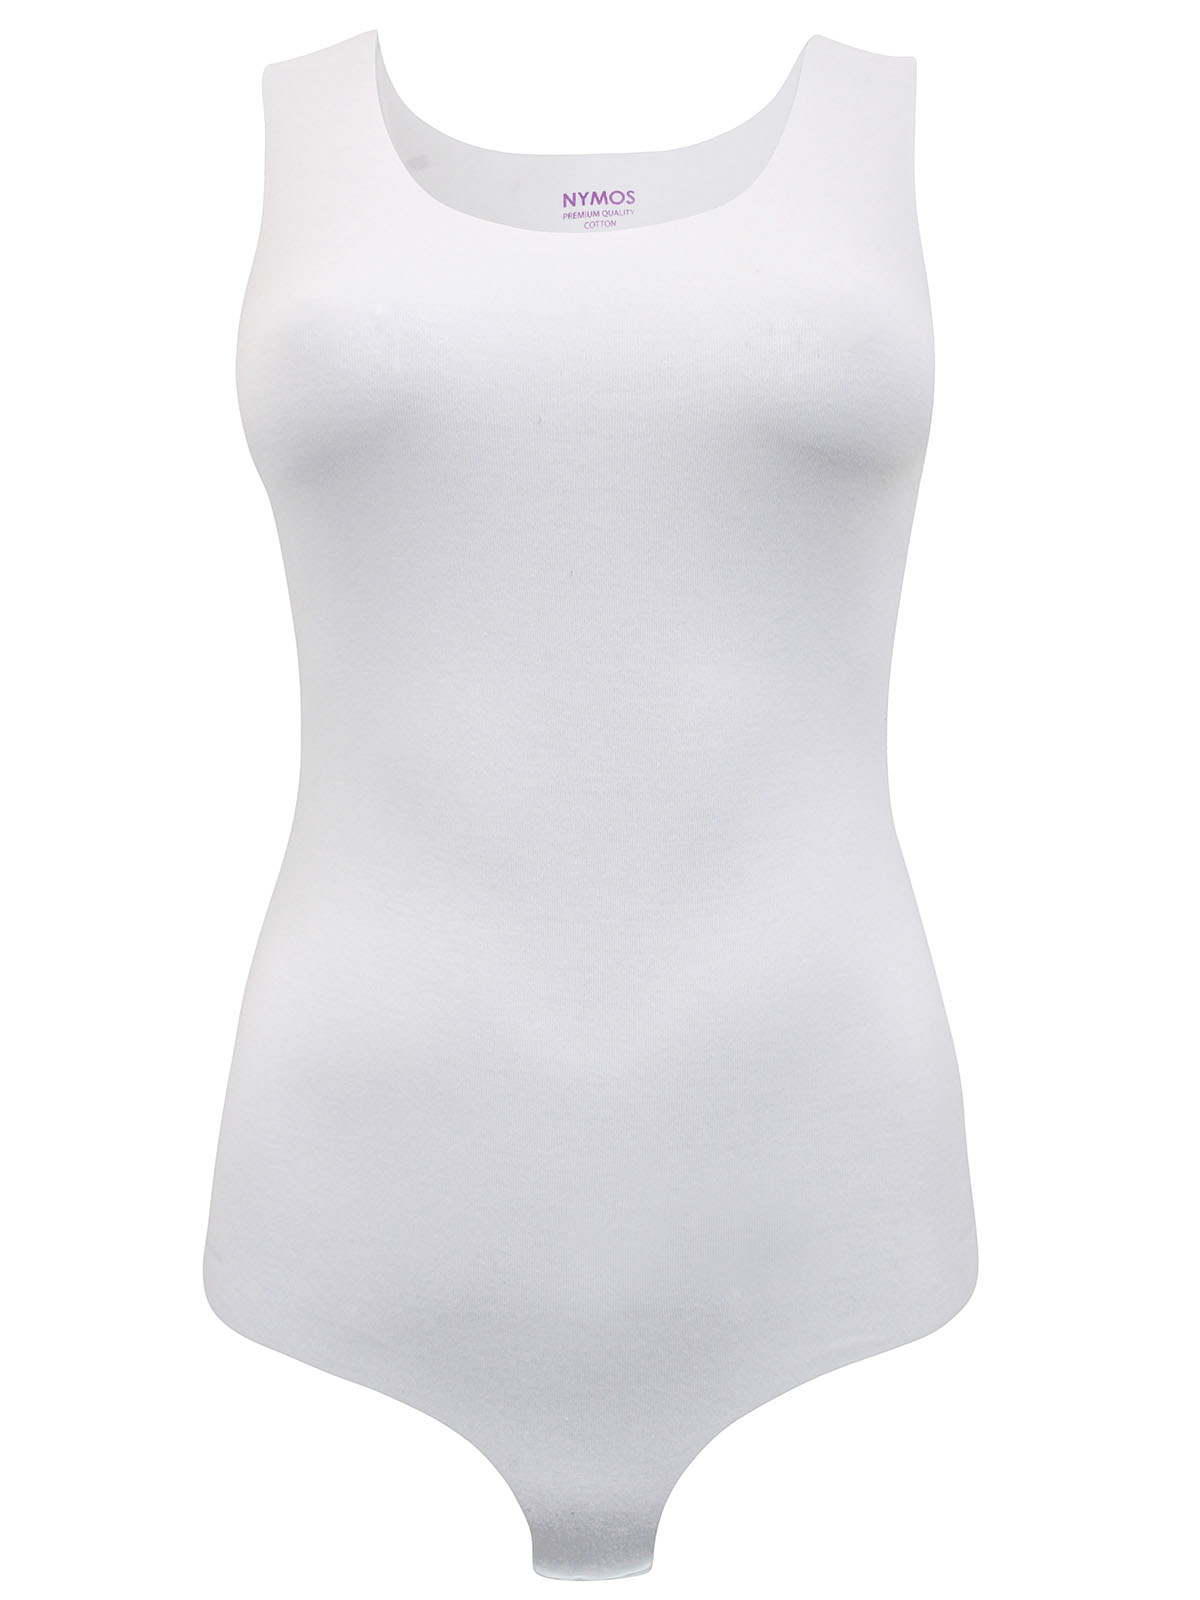 Nymos - - Nymos WHITE Invisible Sleeveless Cheeky Bodysuit - Size S to XL